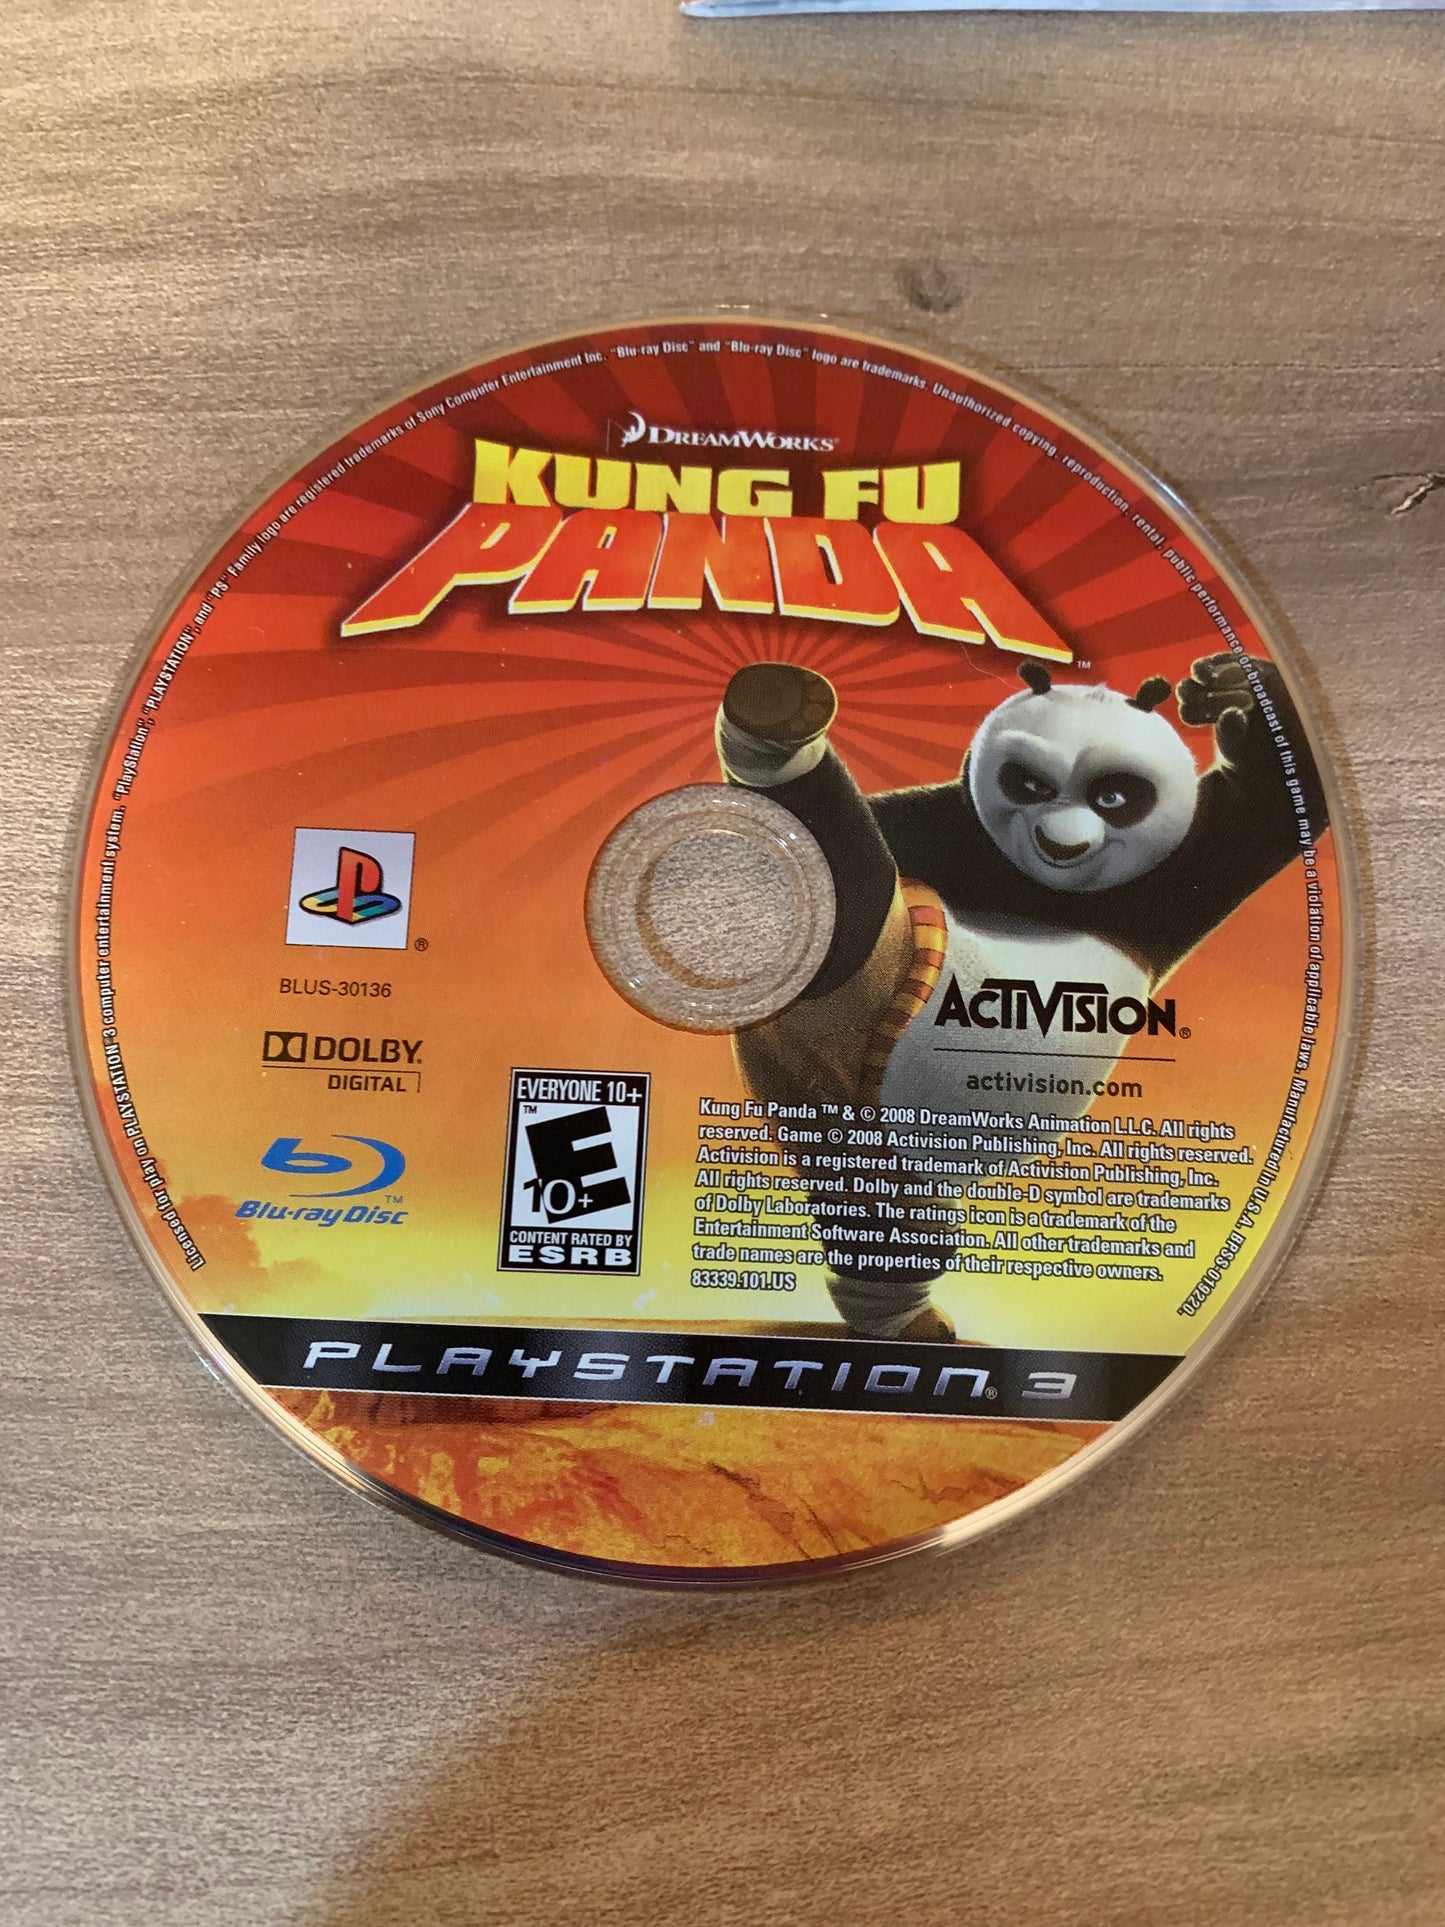 SONY PLAYSTATiON 3 [PS3] | KUNG FU PANDA